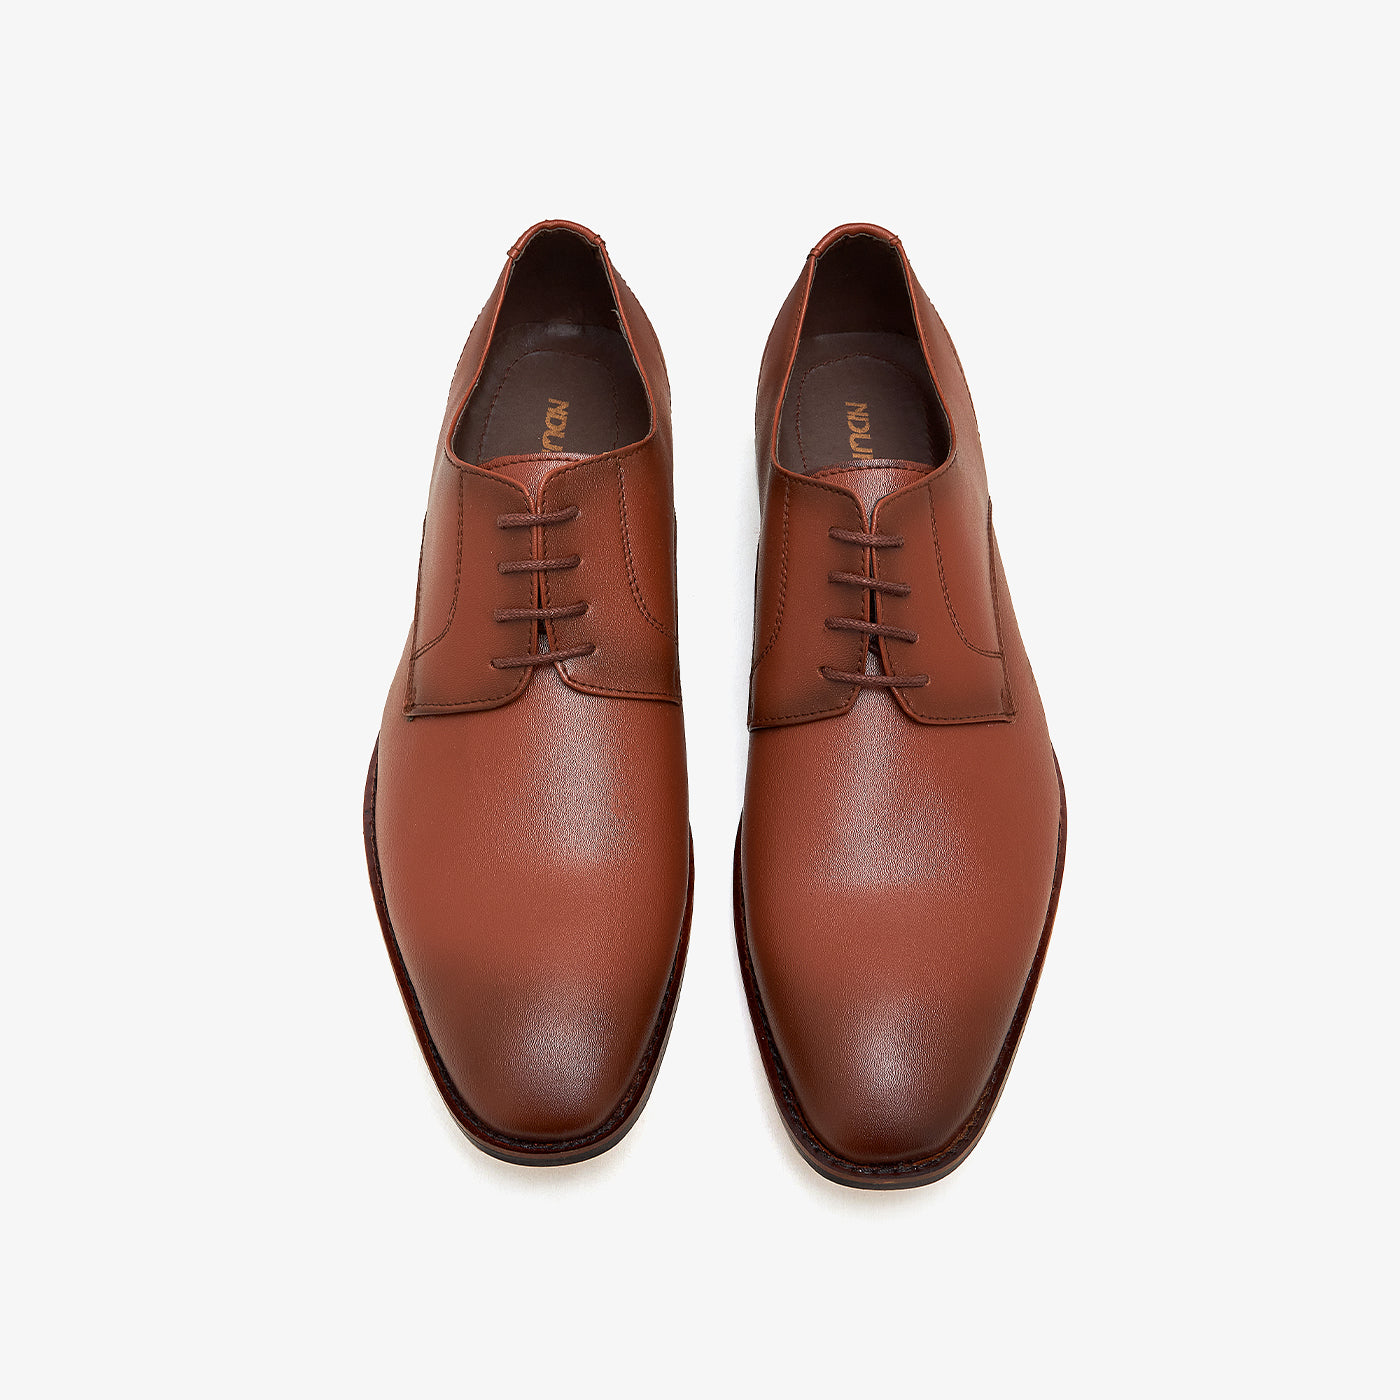 Buy Men Formal Shoes -Men's Sophisticated Formal Shoes M-BF-BLB-0004 ...